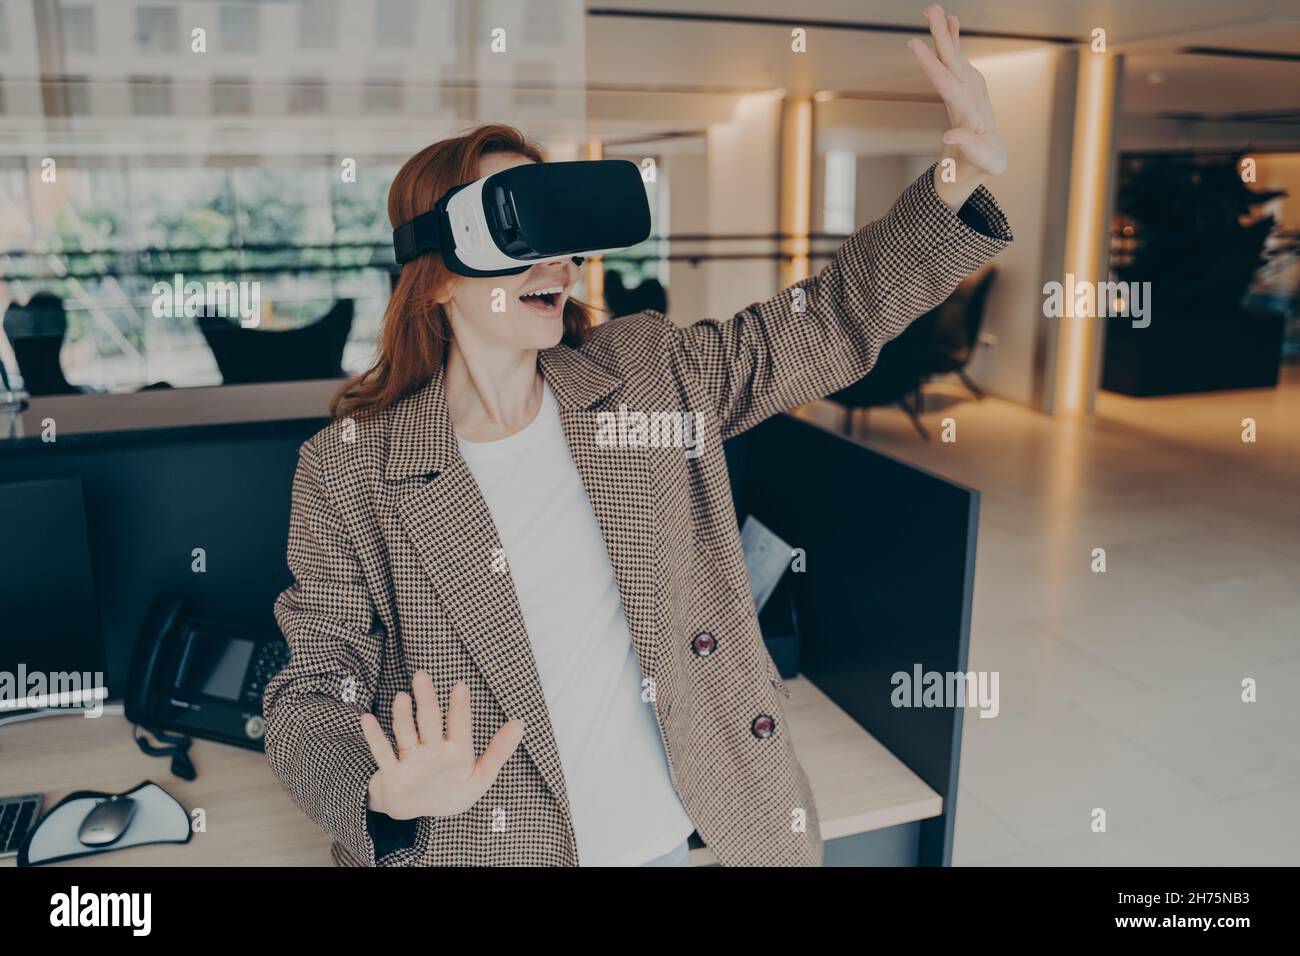 Une femme portant un casque VR a surpris la réalité virtuelle lorsqu'elle se trouvait près de son lieu de travail au bureau Banque D'Images